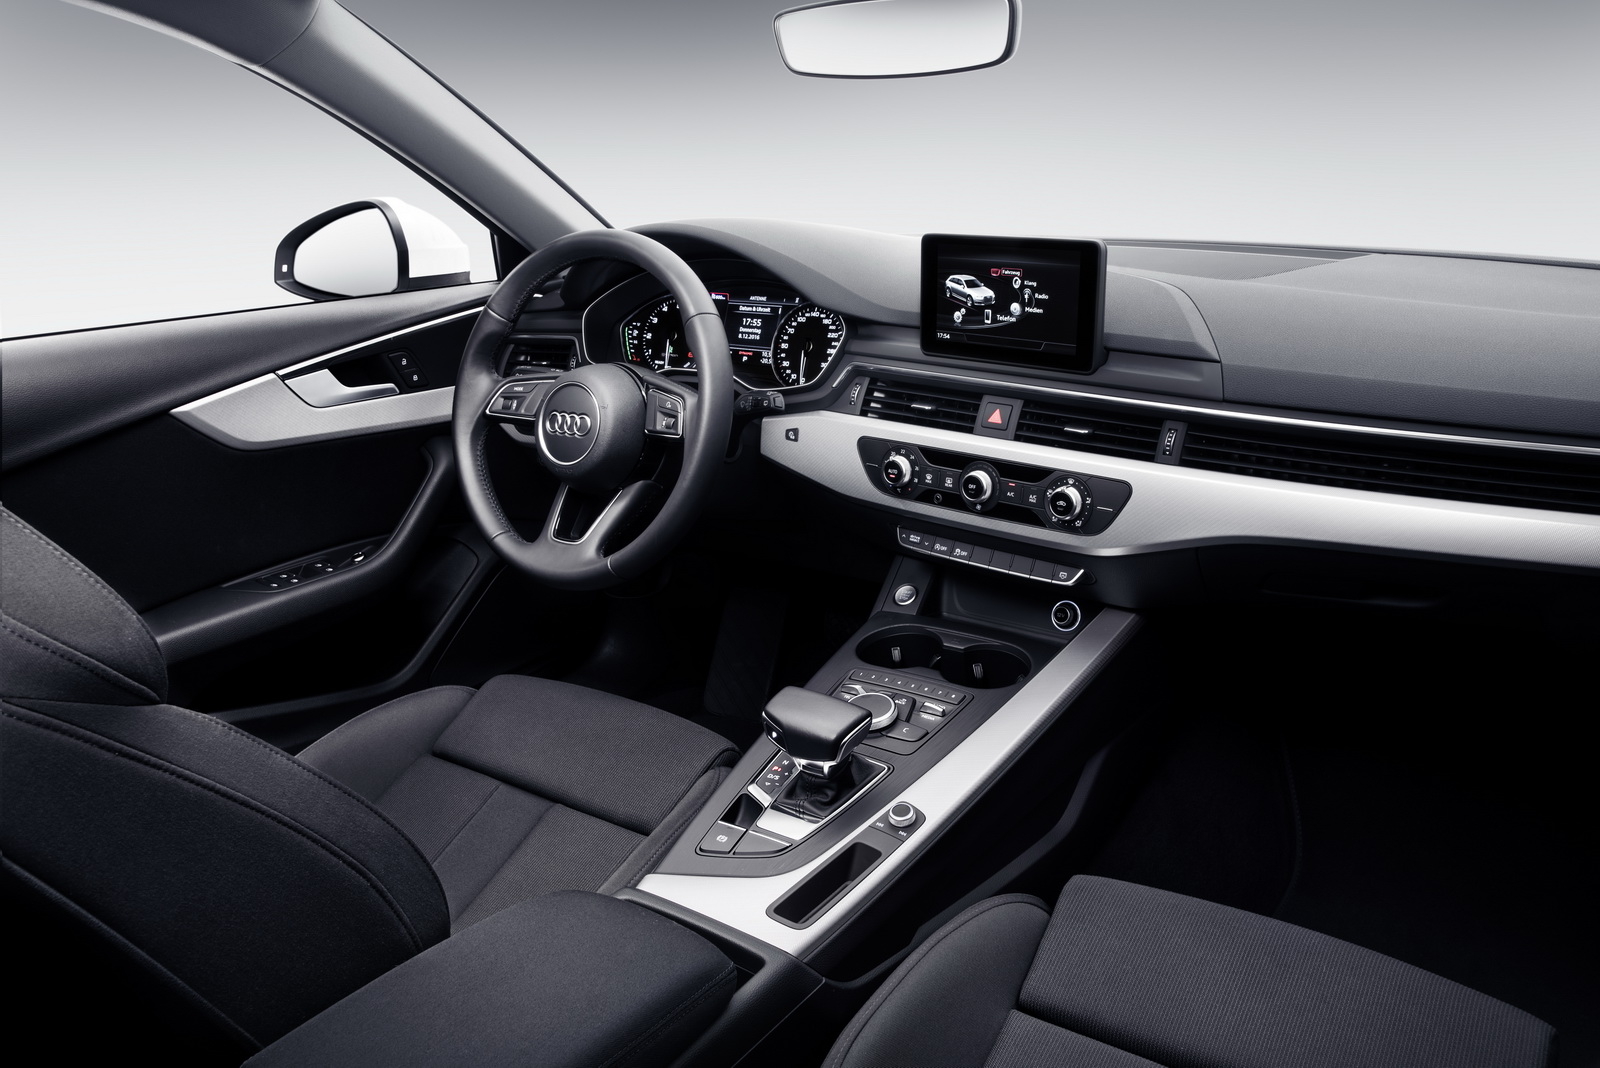 Khoang lái tiện nghi và rộng rãi trên Audi A5 Sportback G-Tron.